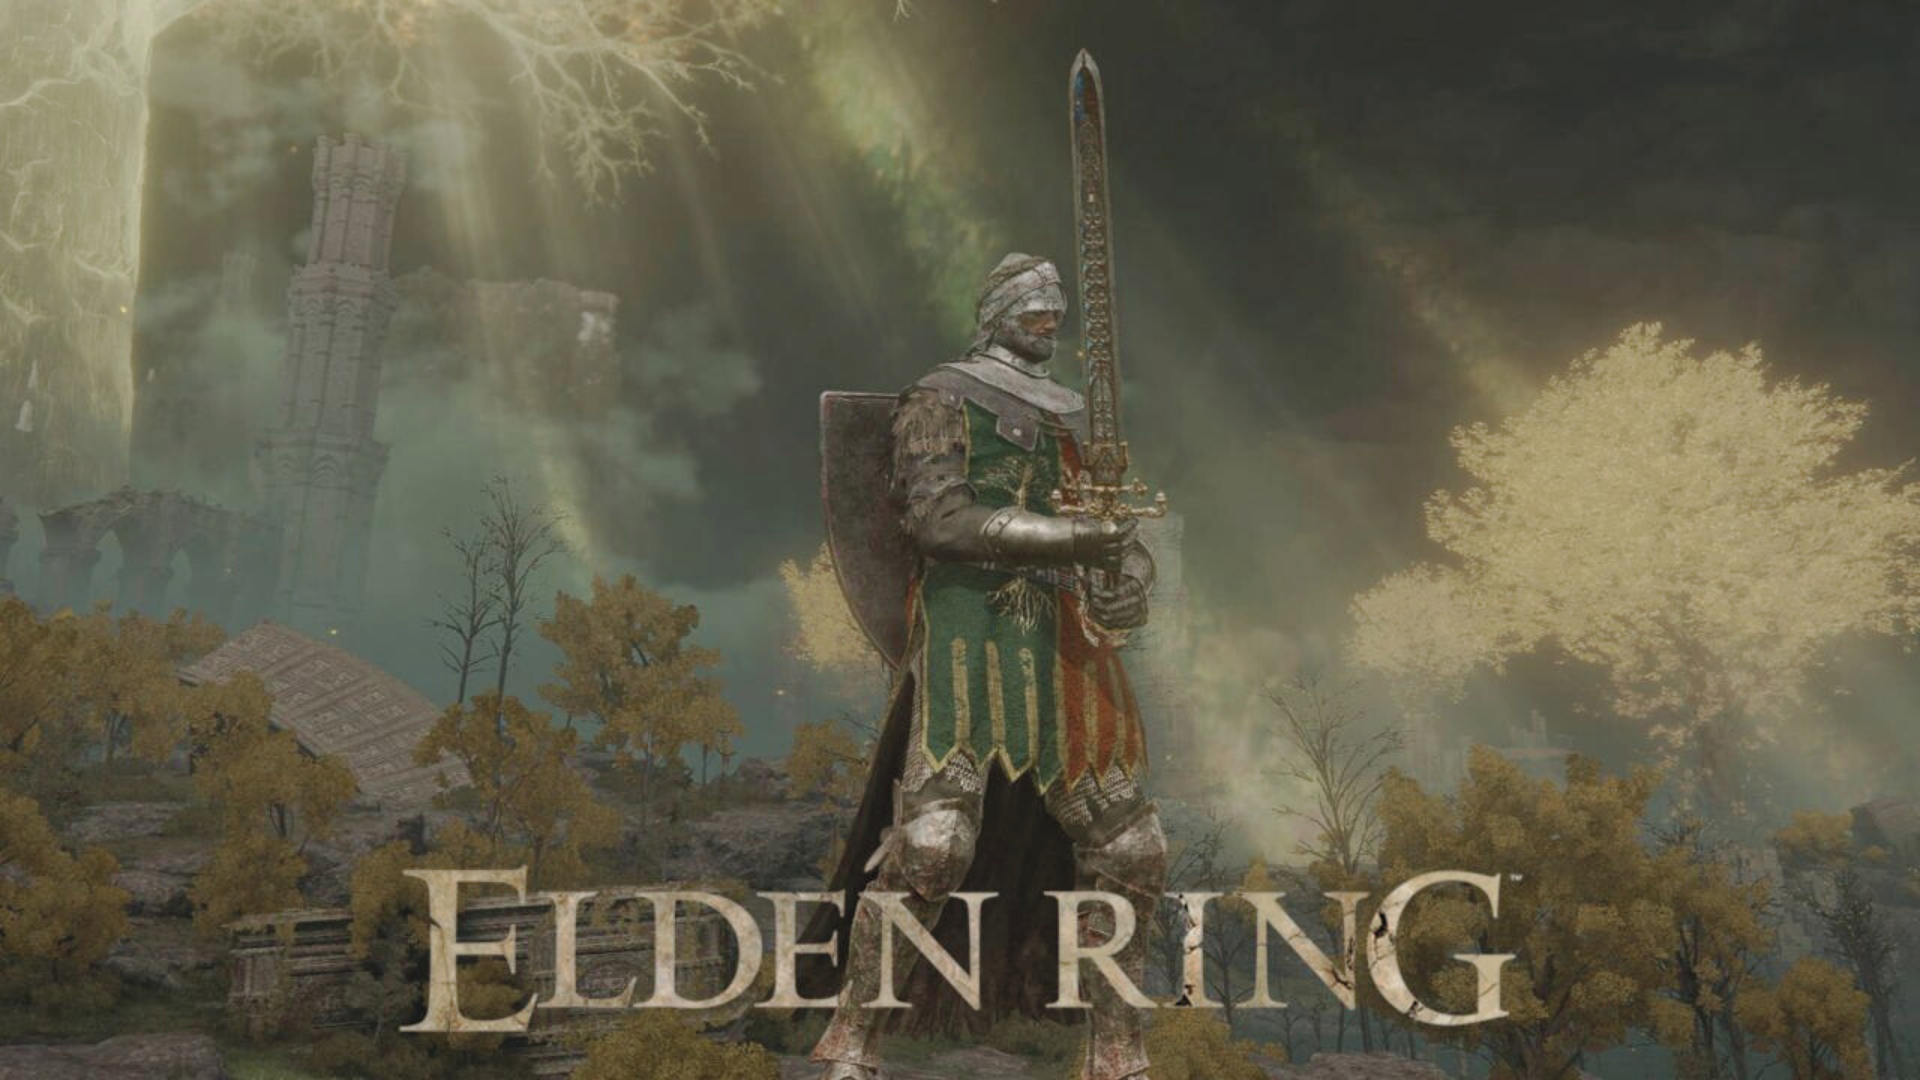 Image pour illustrer les meilleures classes dans Elden Ring